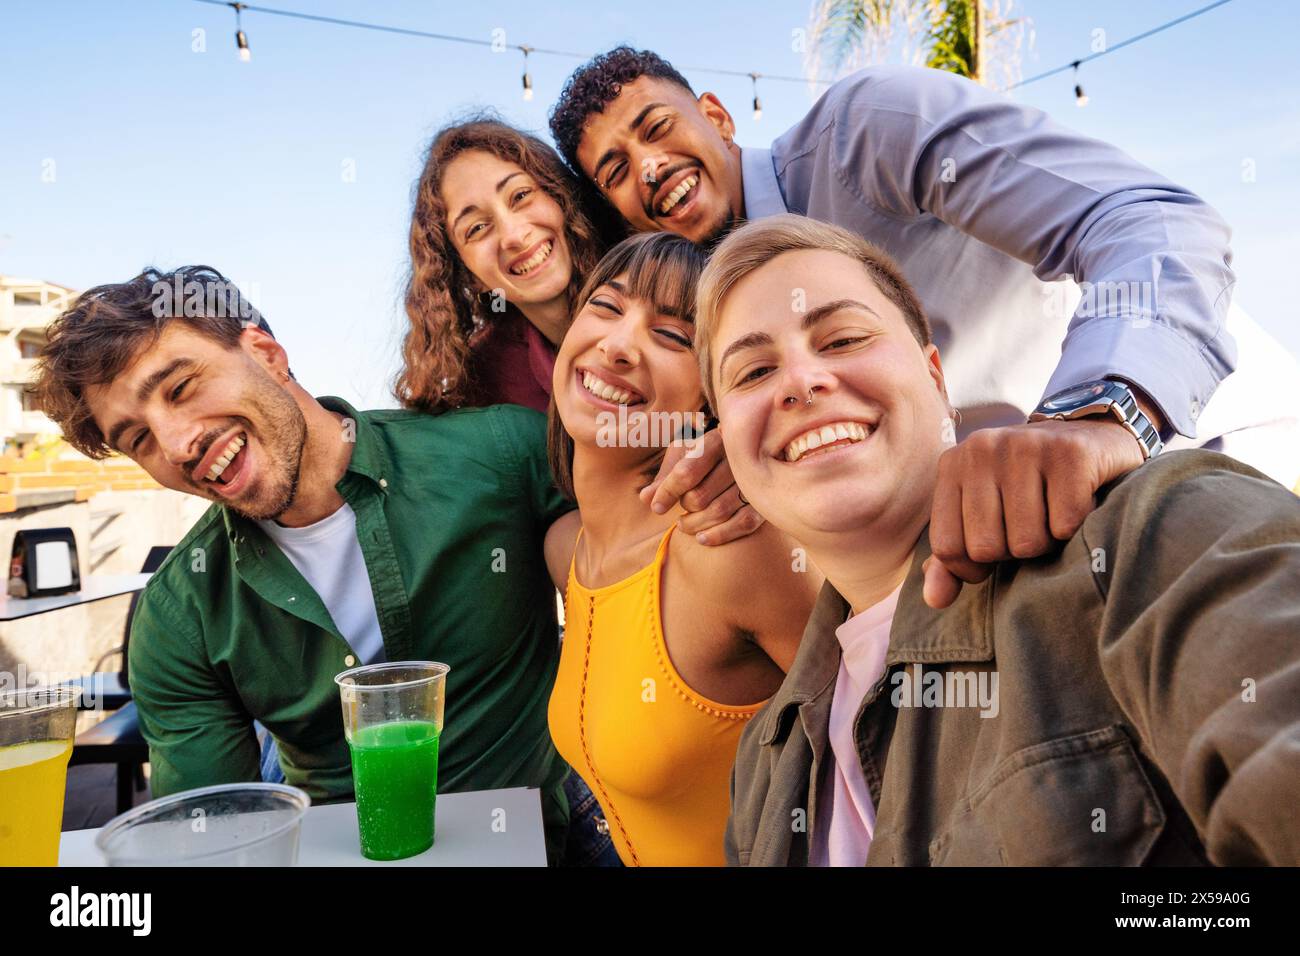 Gruppe von verschiedenen Freunden - lachen und genießen Getränke bei einem Strandtreffen, zeigen Freude und Zweisamkeit in einer ungezwungenen Umgebung im Freien. Stockfoto